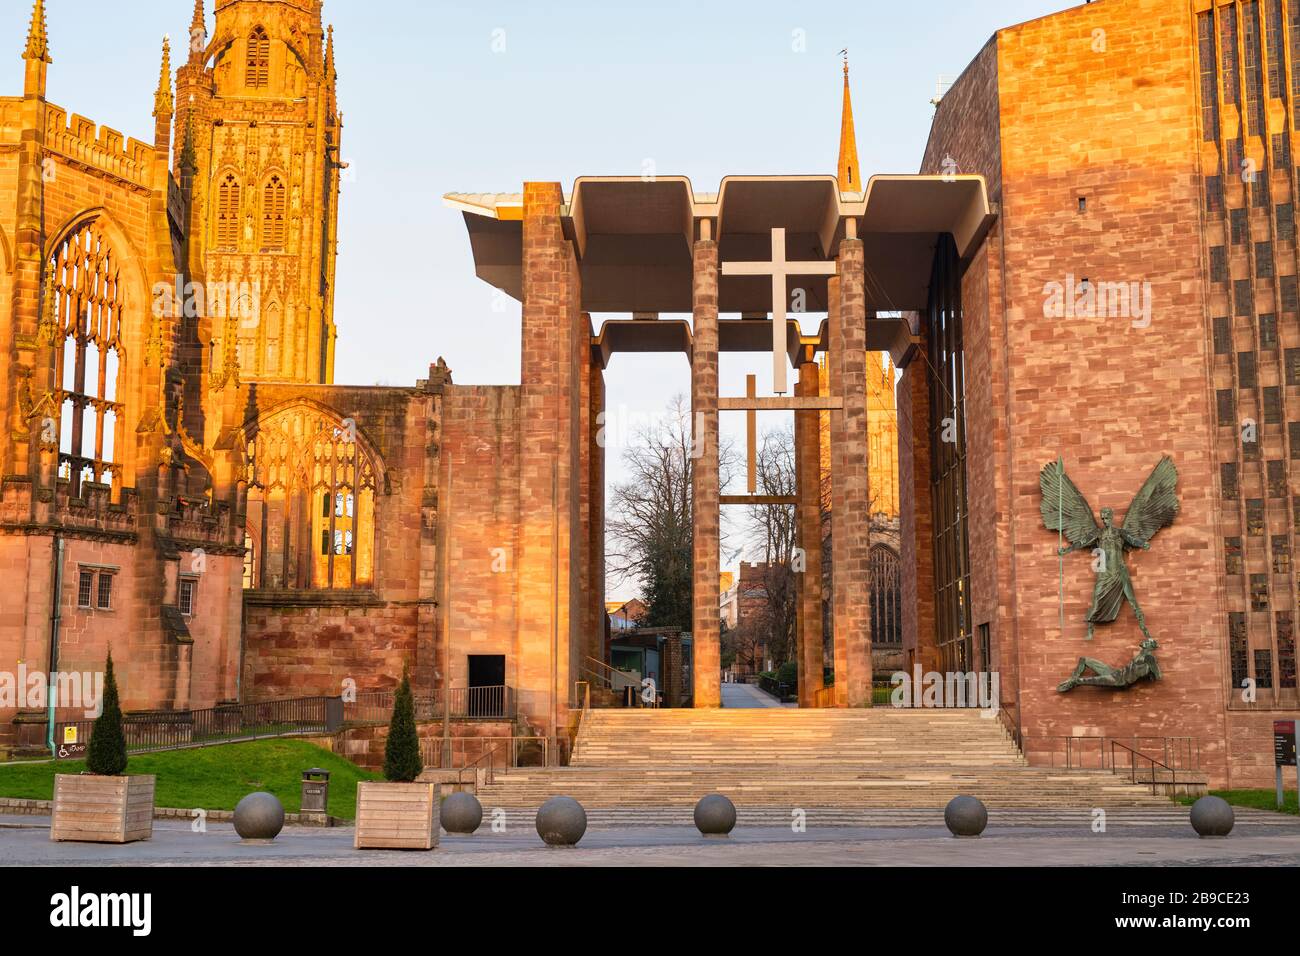 Vieilles et nouvelles cathédrales de Coventry au lever du soleil au printemps. Coventry, West Midlands, Angleterre Banque D'Images